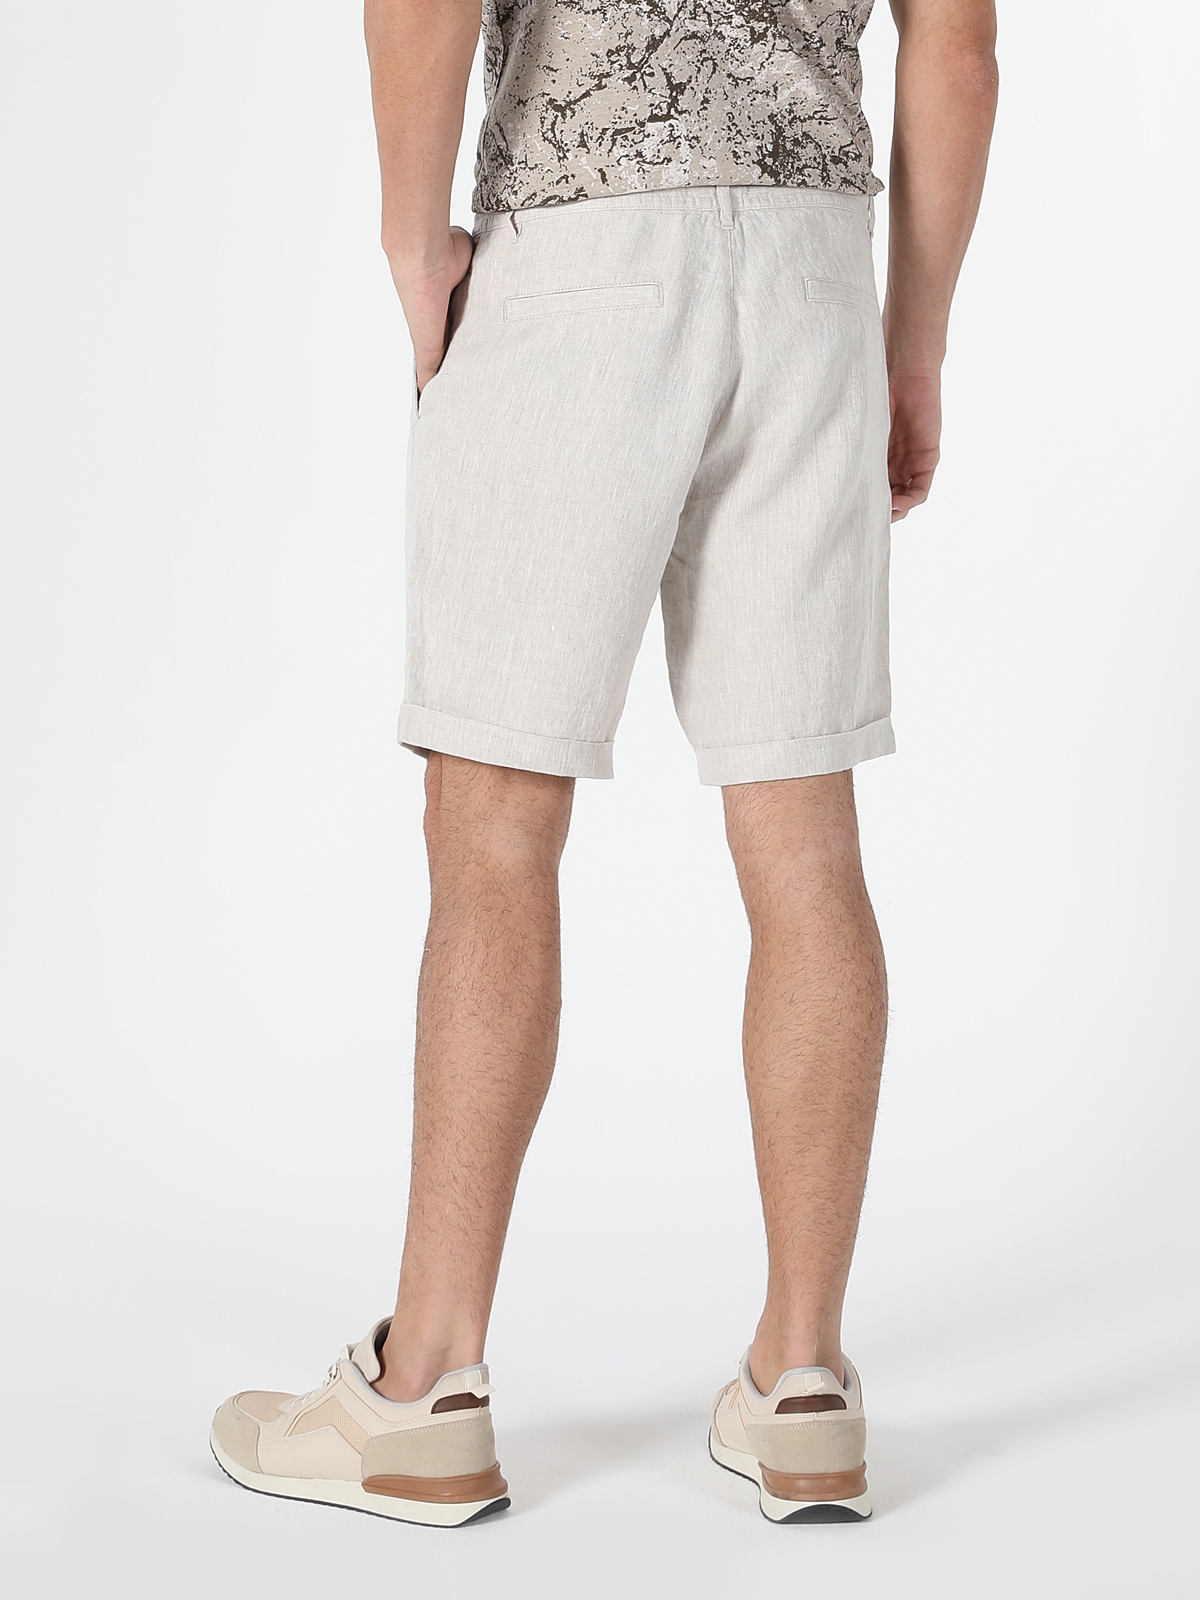 Afișați detalii pentru Short / Pantaloni Scurti De Barbati Alb Regular Fit  CL1059318